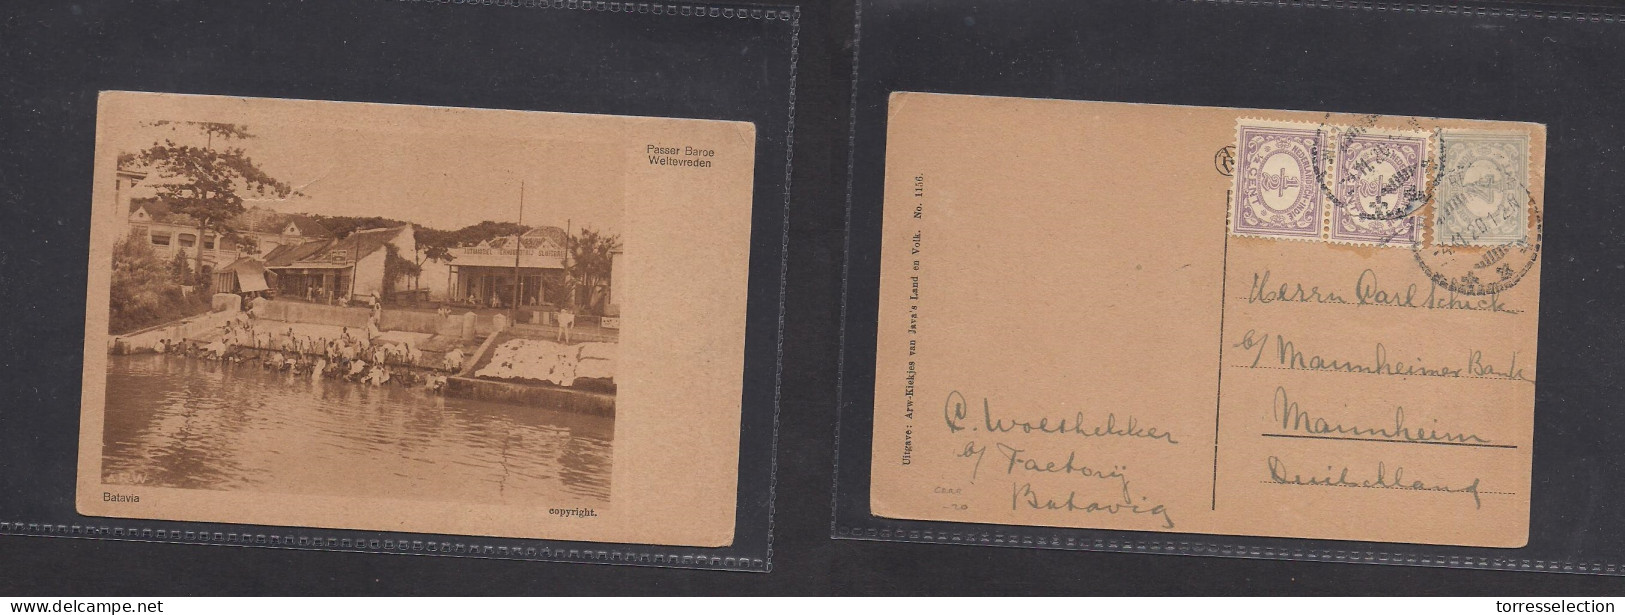 DUTCH INDIES. 1920 (4 Nov) Batavia - Germany, Mannheim. Multifkd Ppc. Interesting Photo Card. XSALE. - Niederländisch-Indien